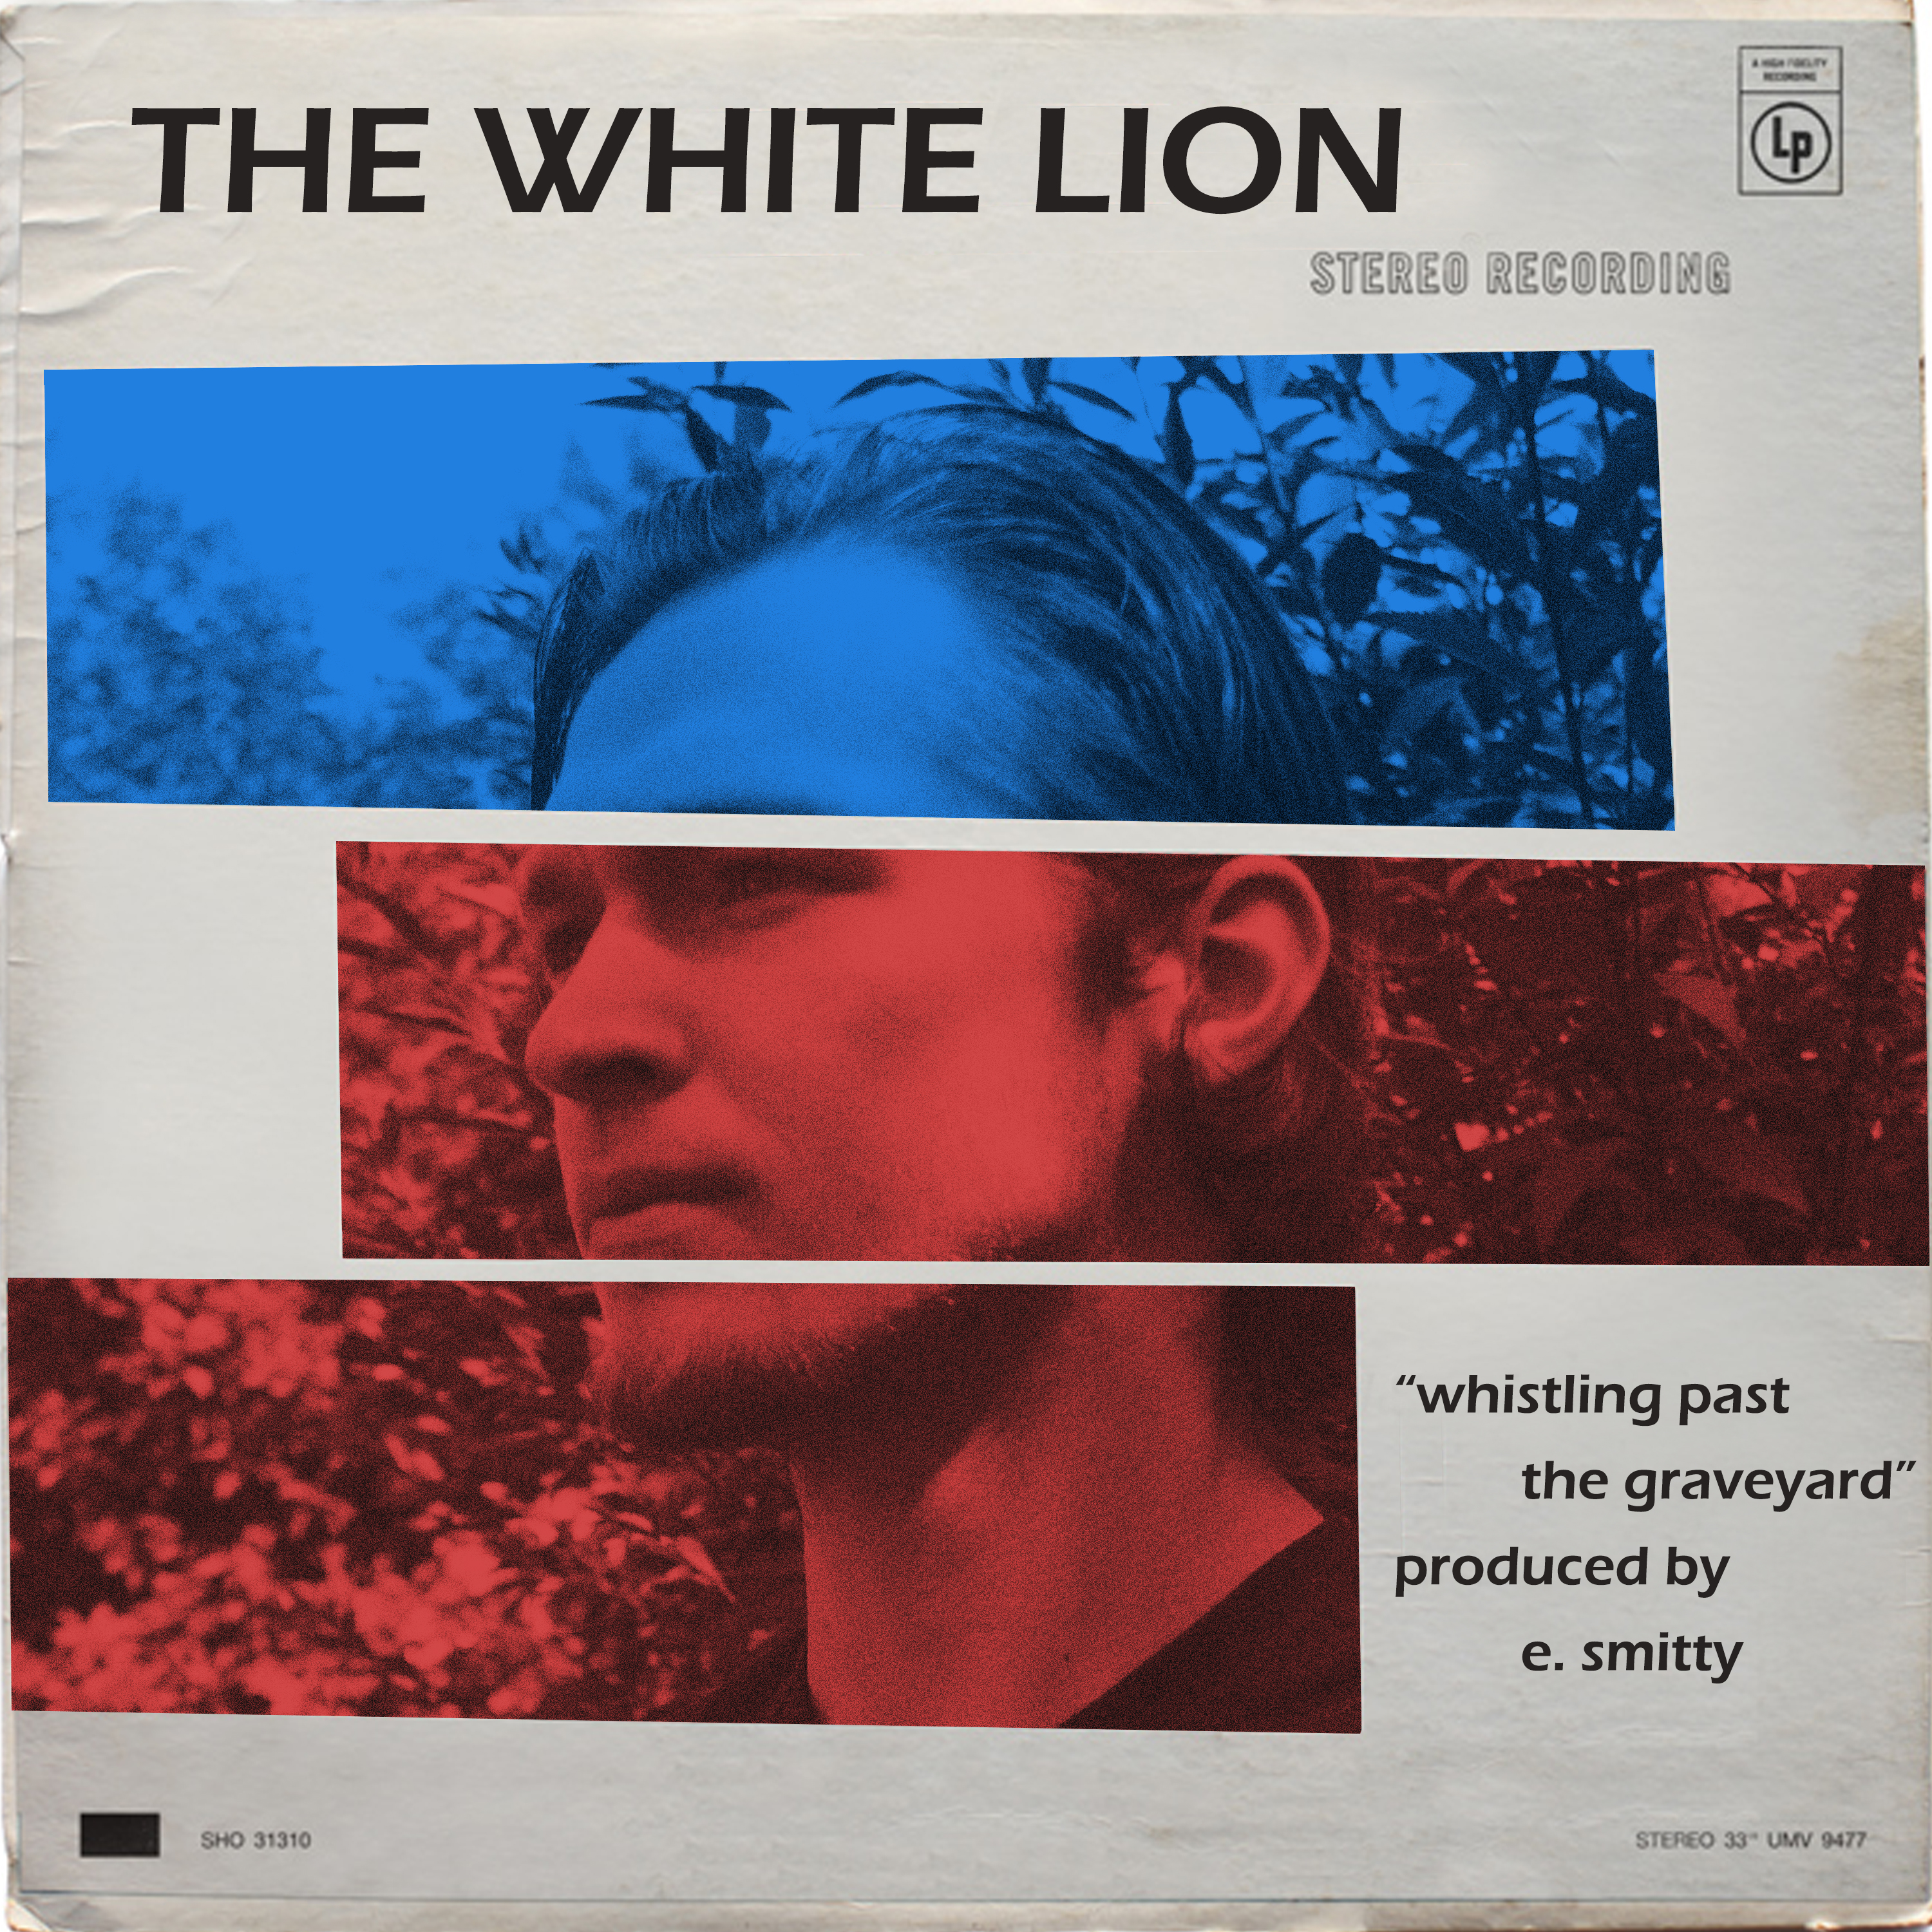 The White Lion – “Whistling Past The Graveyard” [Prod. E. Smitty] @thewhitelion208